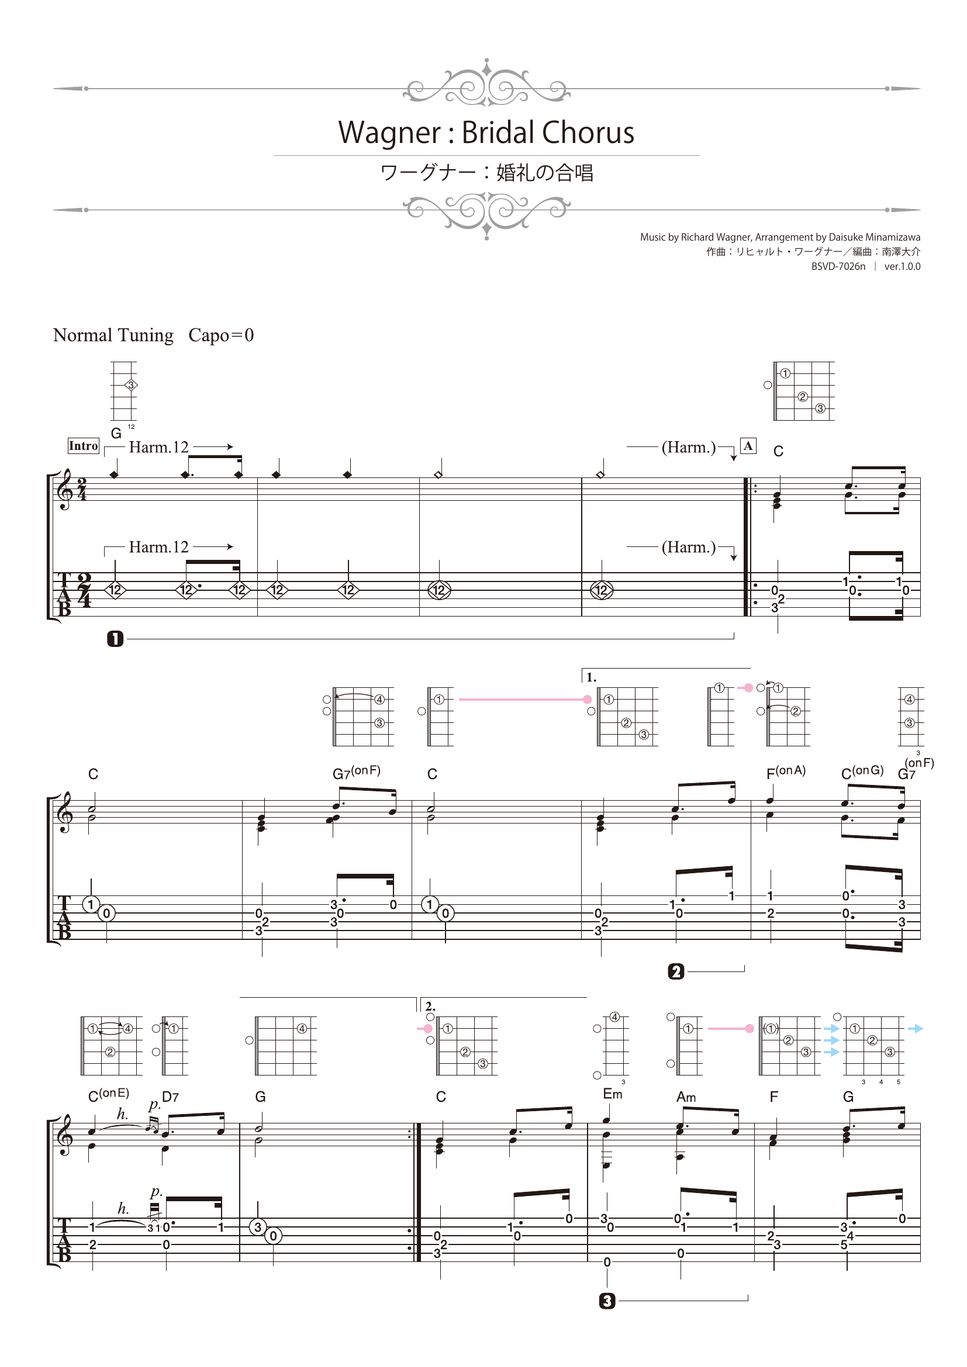 Wagner - Bridal Chorus (Solo Guitar) by Daisuke Minamizawa